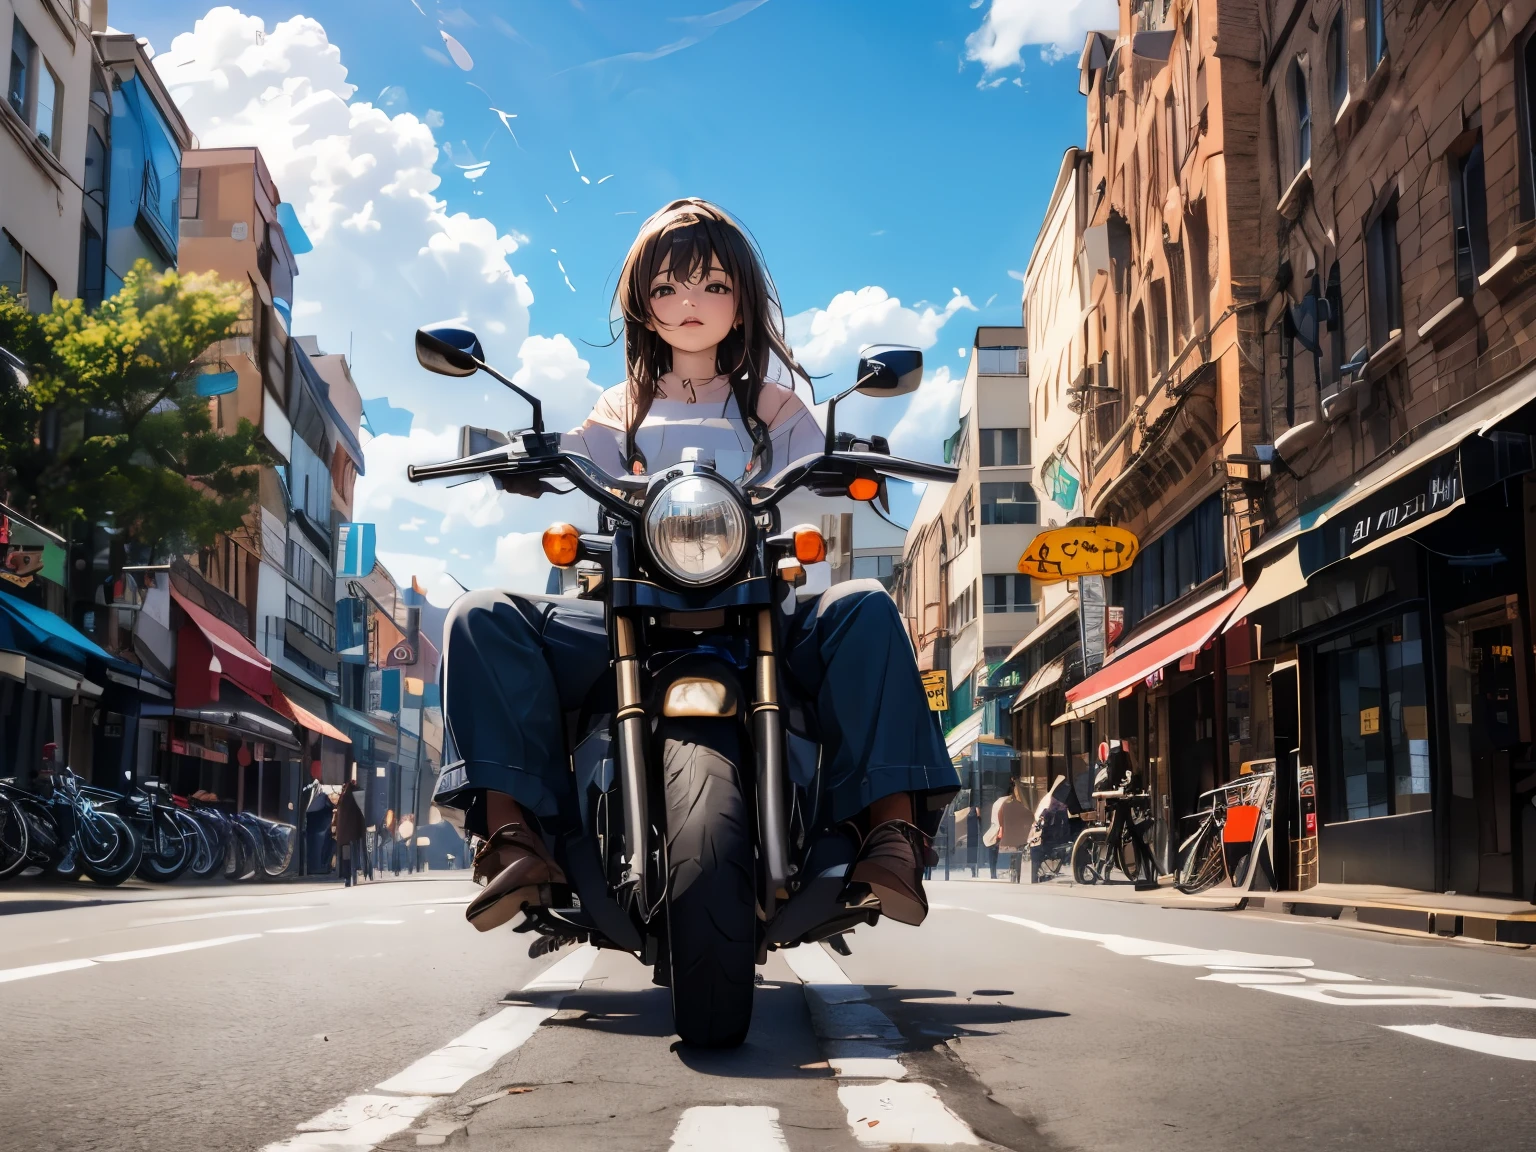 женщина за рулем красной машины с мотоциклом, едущим рядом по улице, здания, облака в небе,